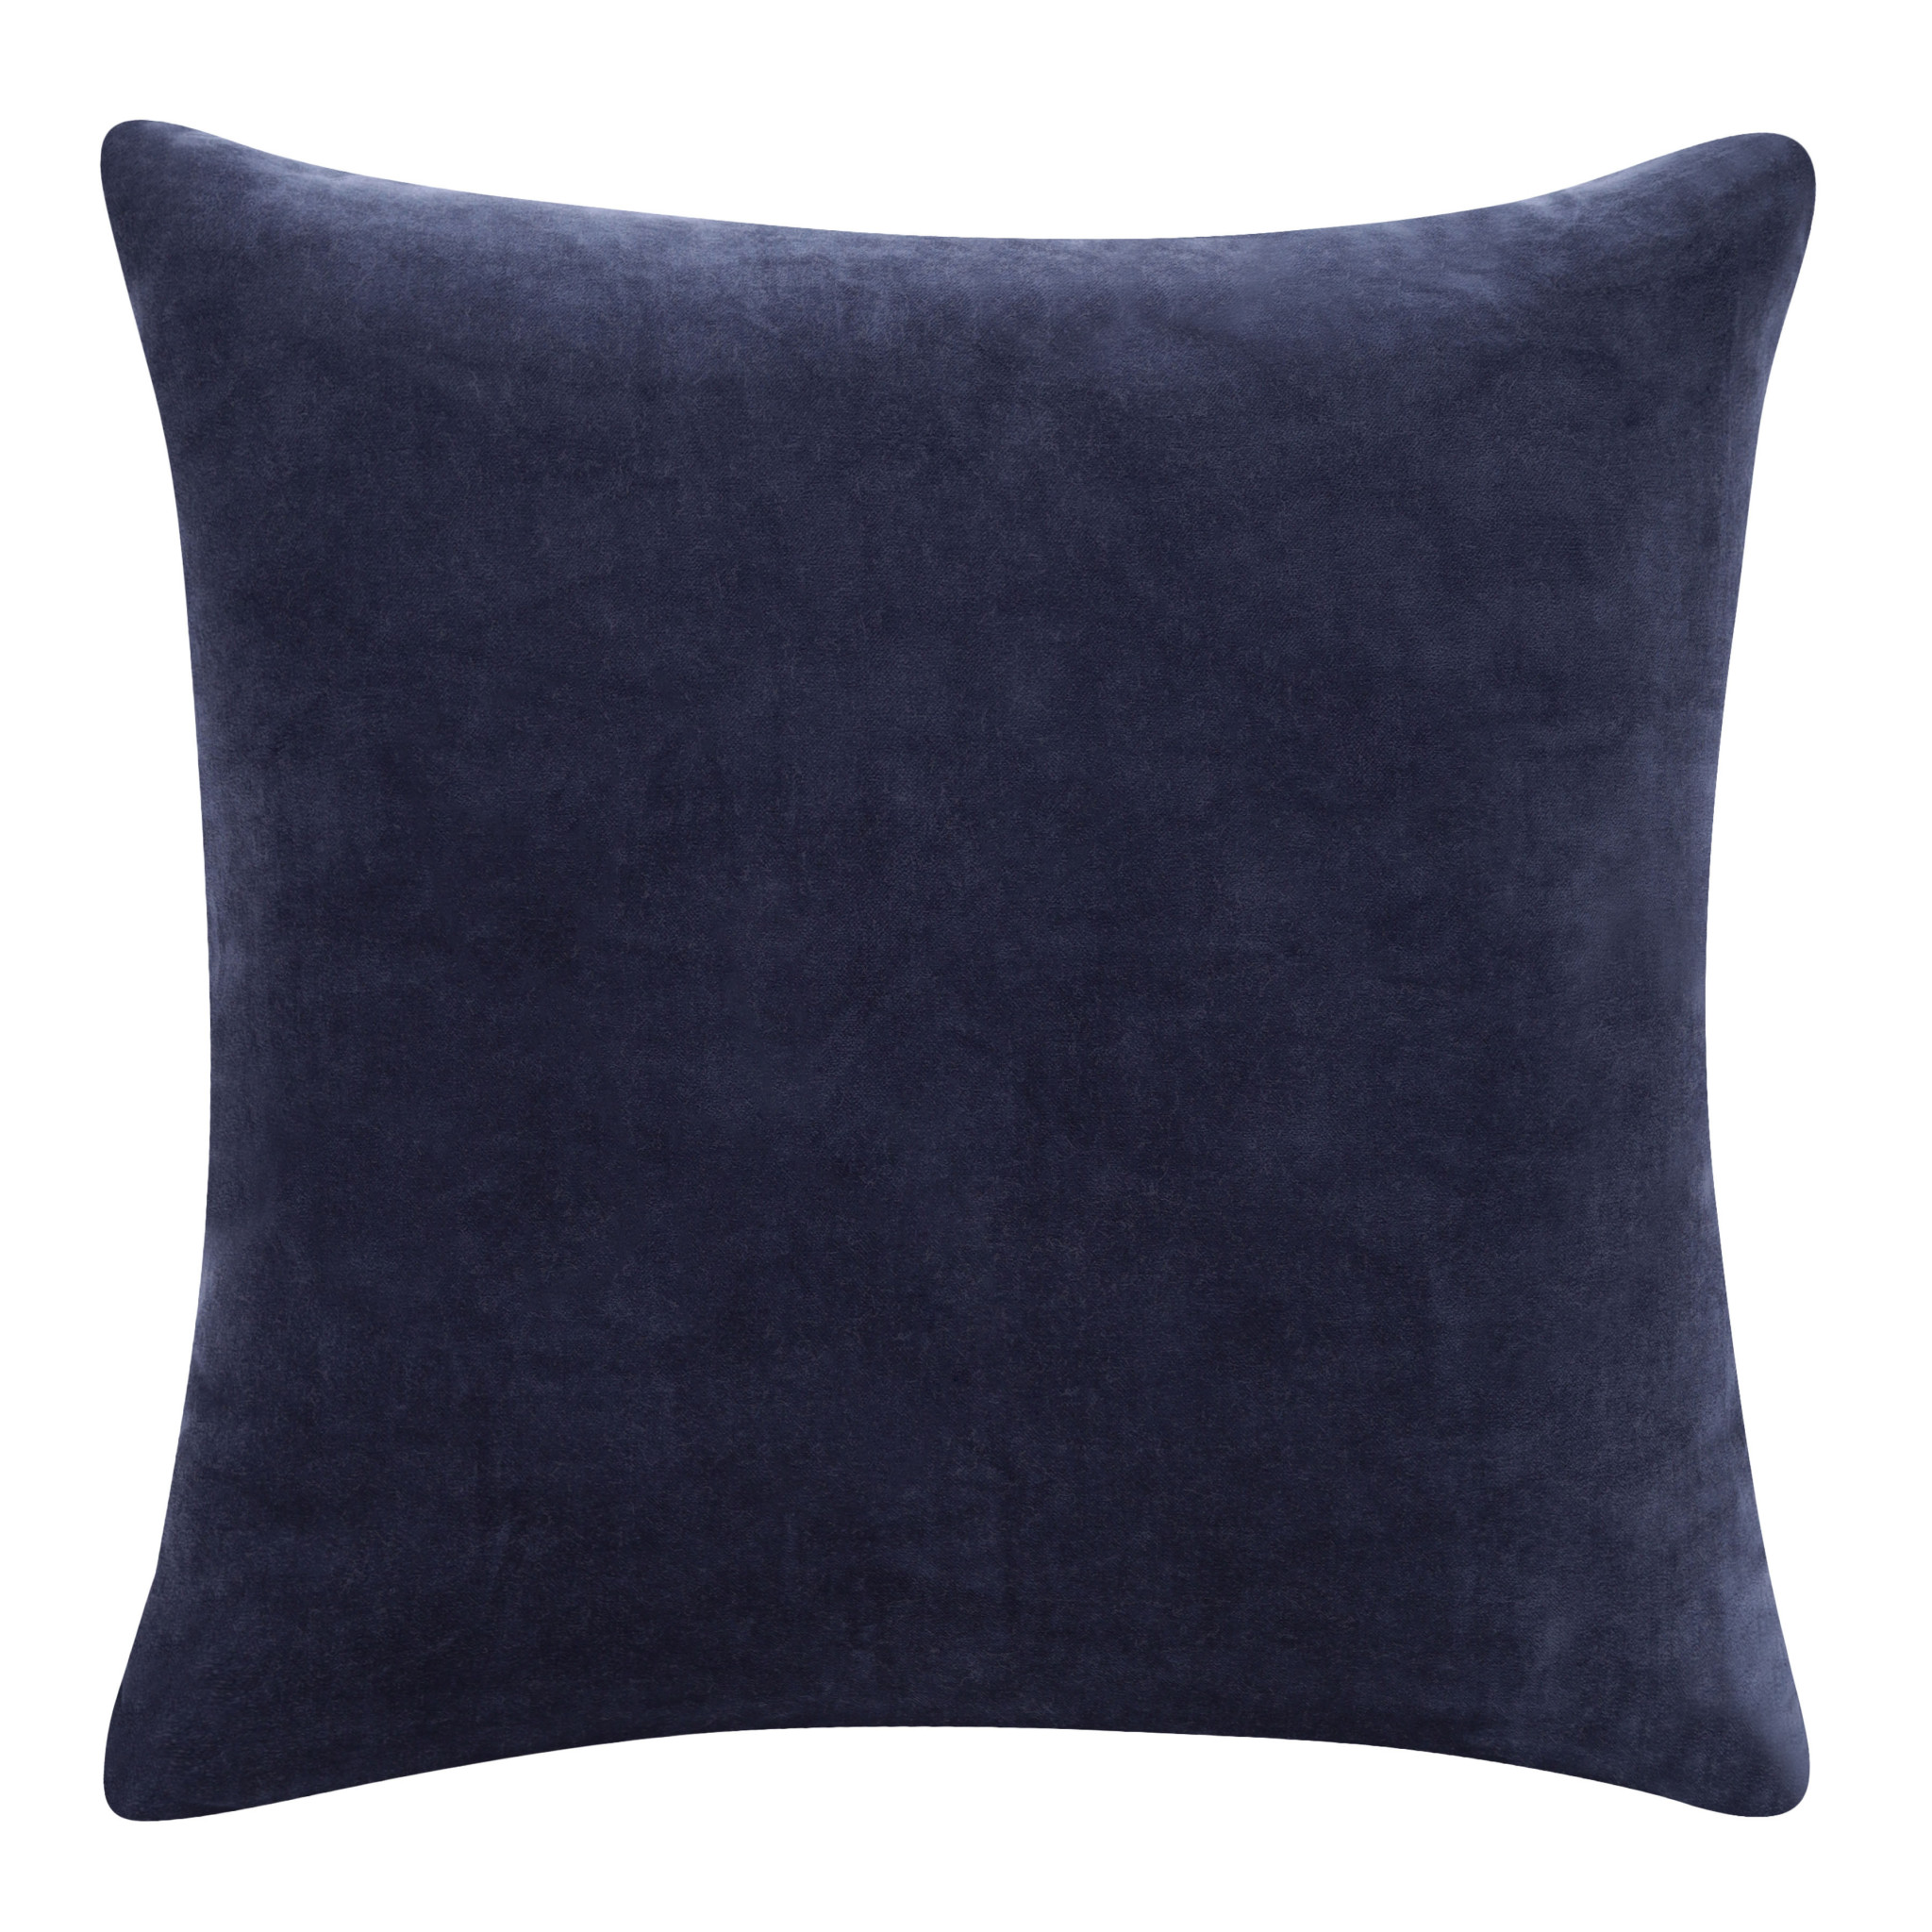 20" X 20" Dark Blue 100% Cotton Zippered Pillow-517051-1